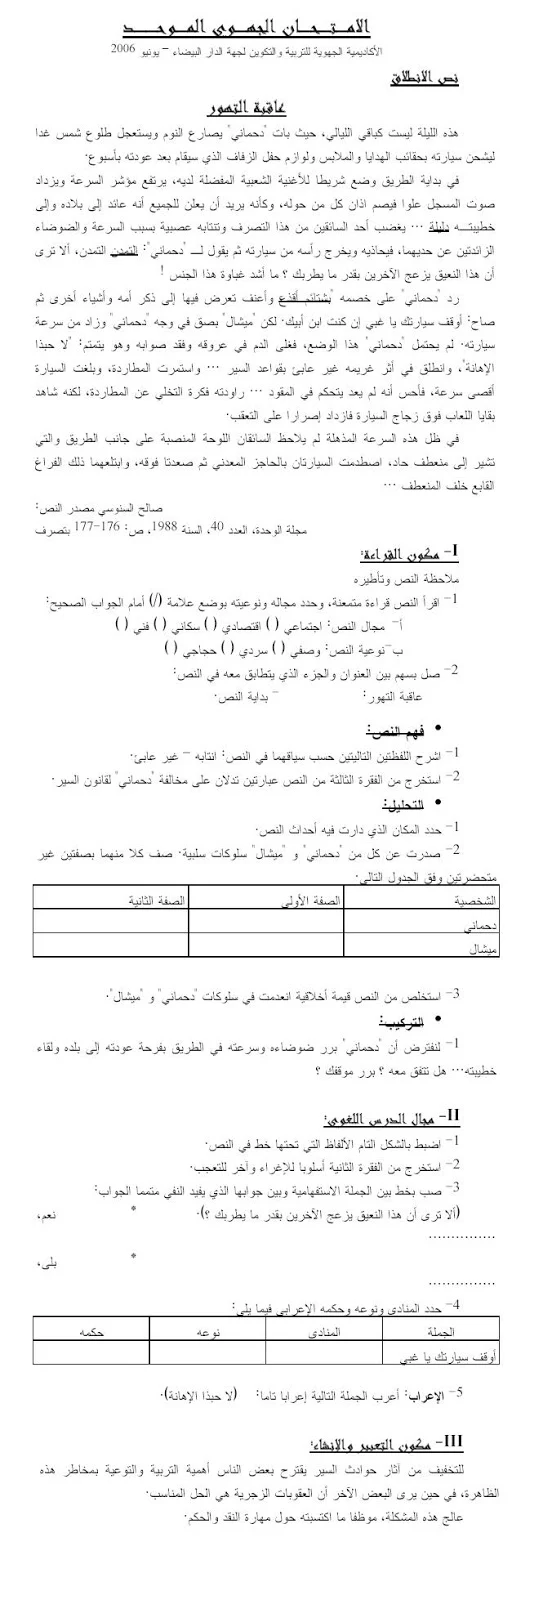 الامتحان الجهوي الموحد اللغة العربية جهة الدار البيضاء – يونيو 2006